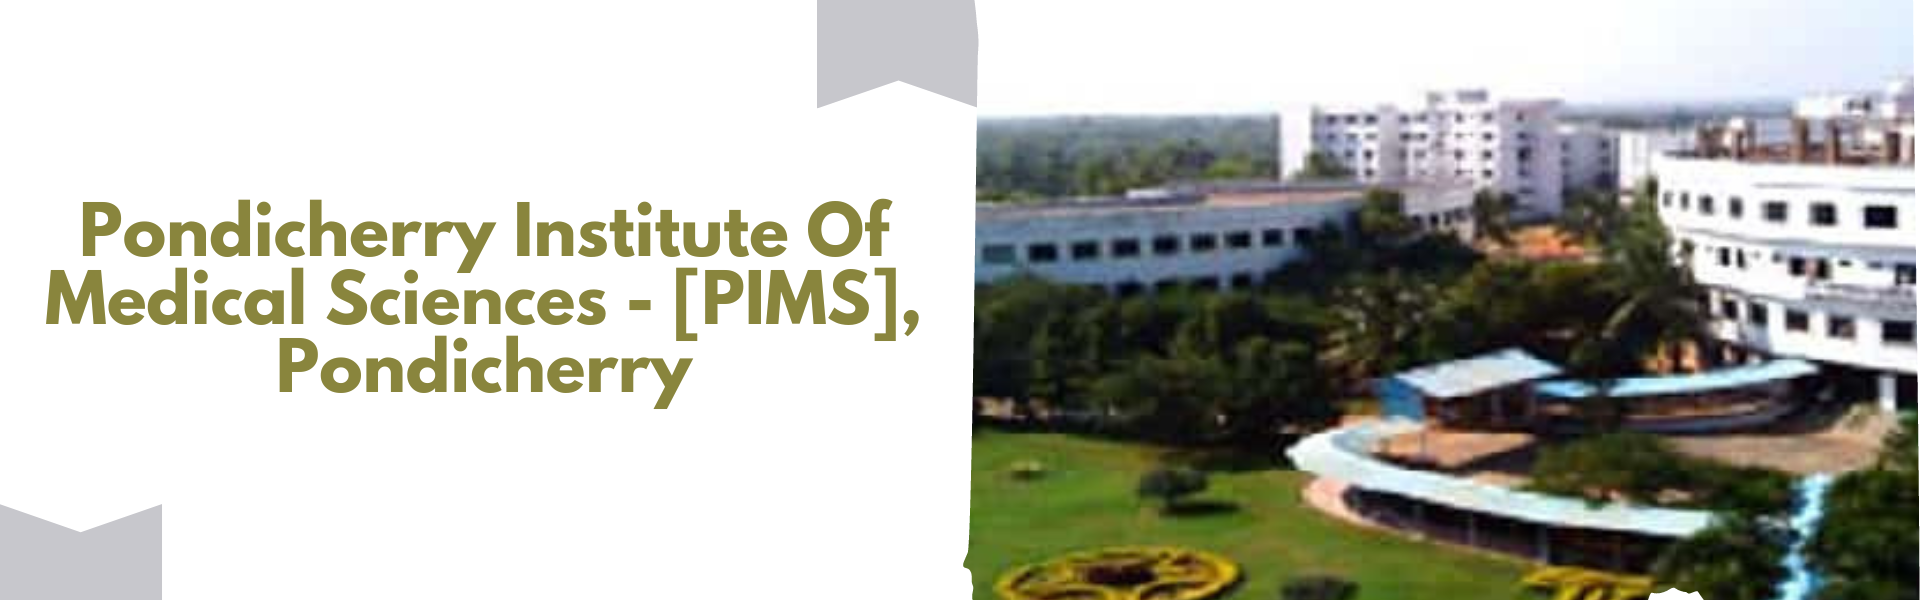 Pondicherry Institute Of Medical Sciences - [PIMS], Pondicherry